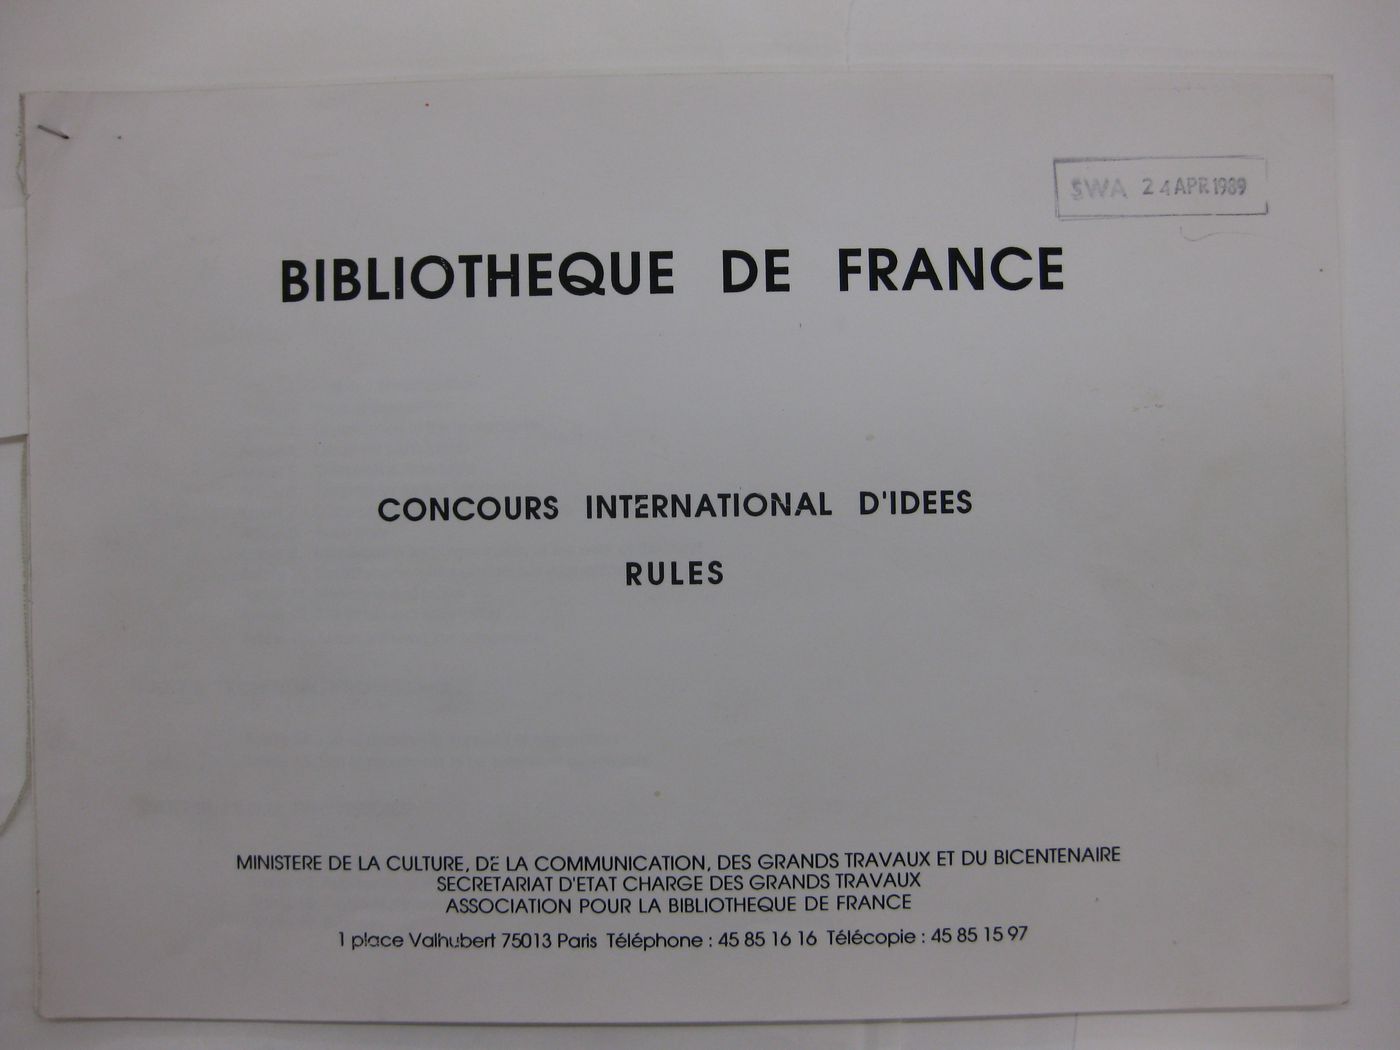 Bibliothèque de France concours international d'idées: Rules